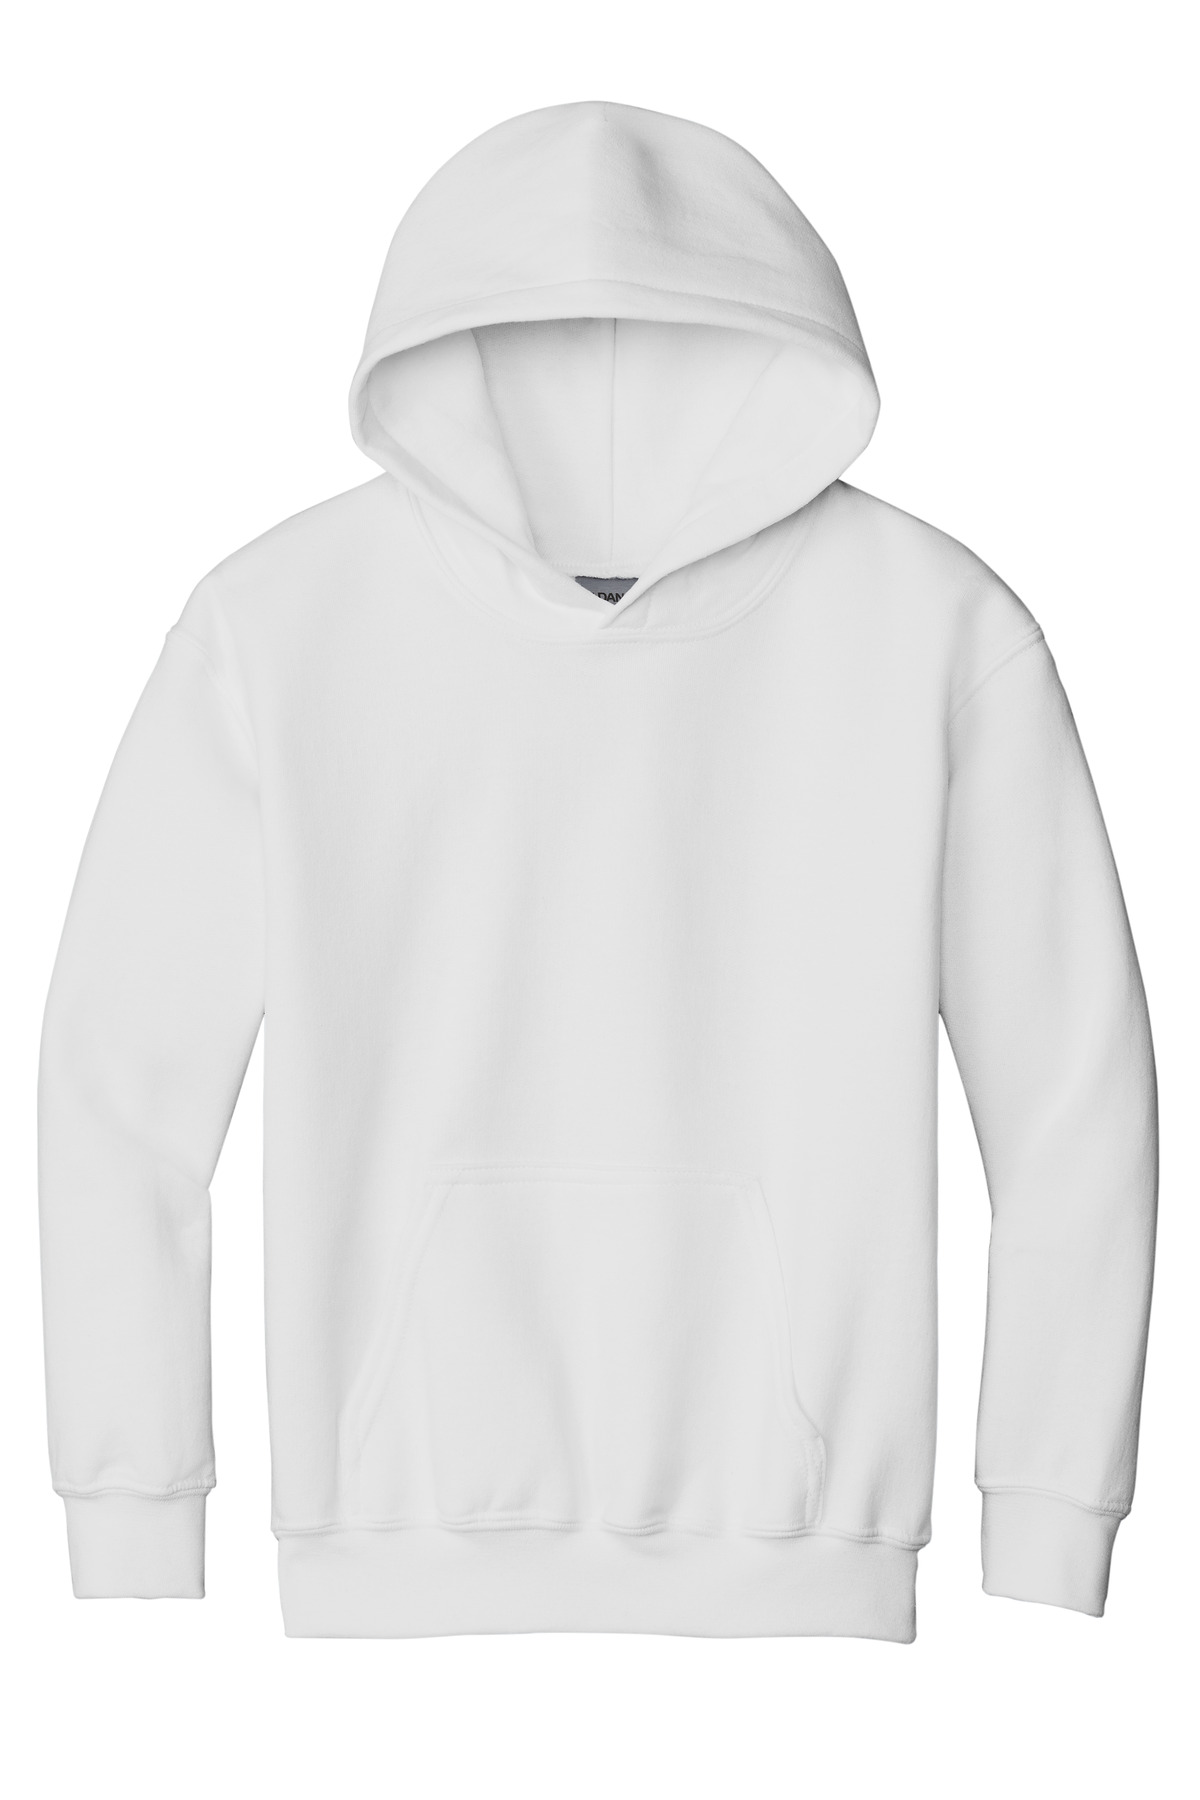 Gildan Youth Sweatshirts & Fleece for Hospitality ® - Youth Heavy Blend Hooded Sweatshirt.-Gildan